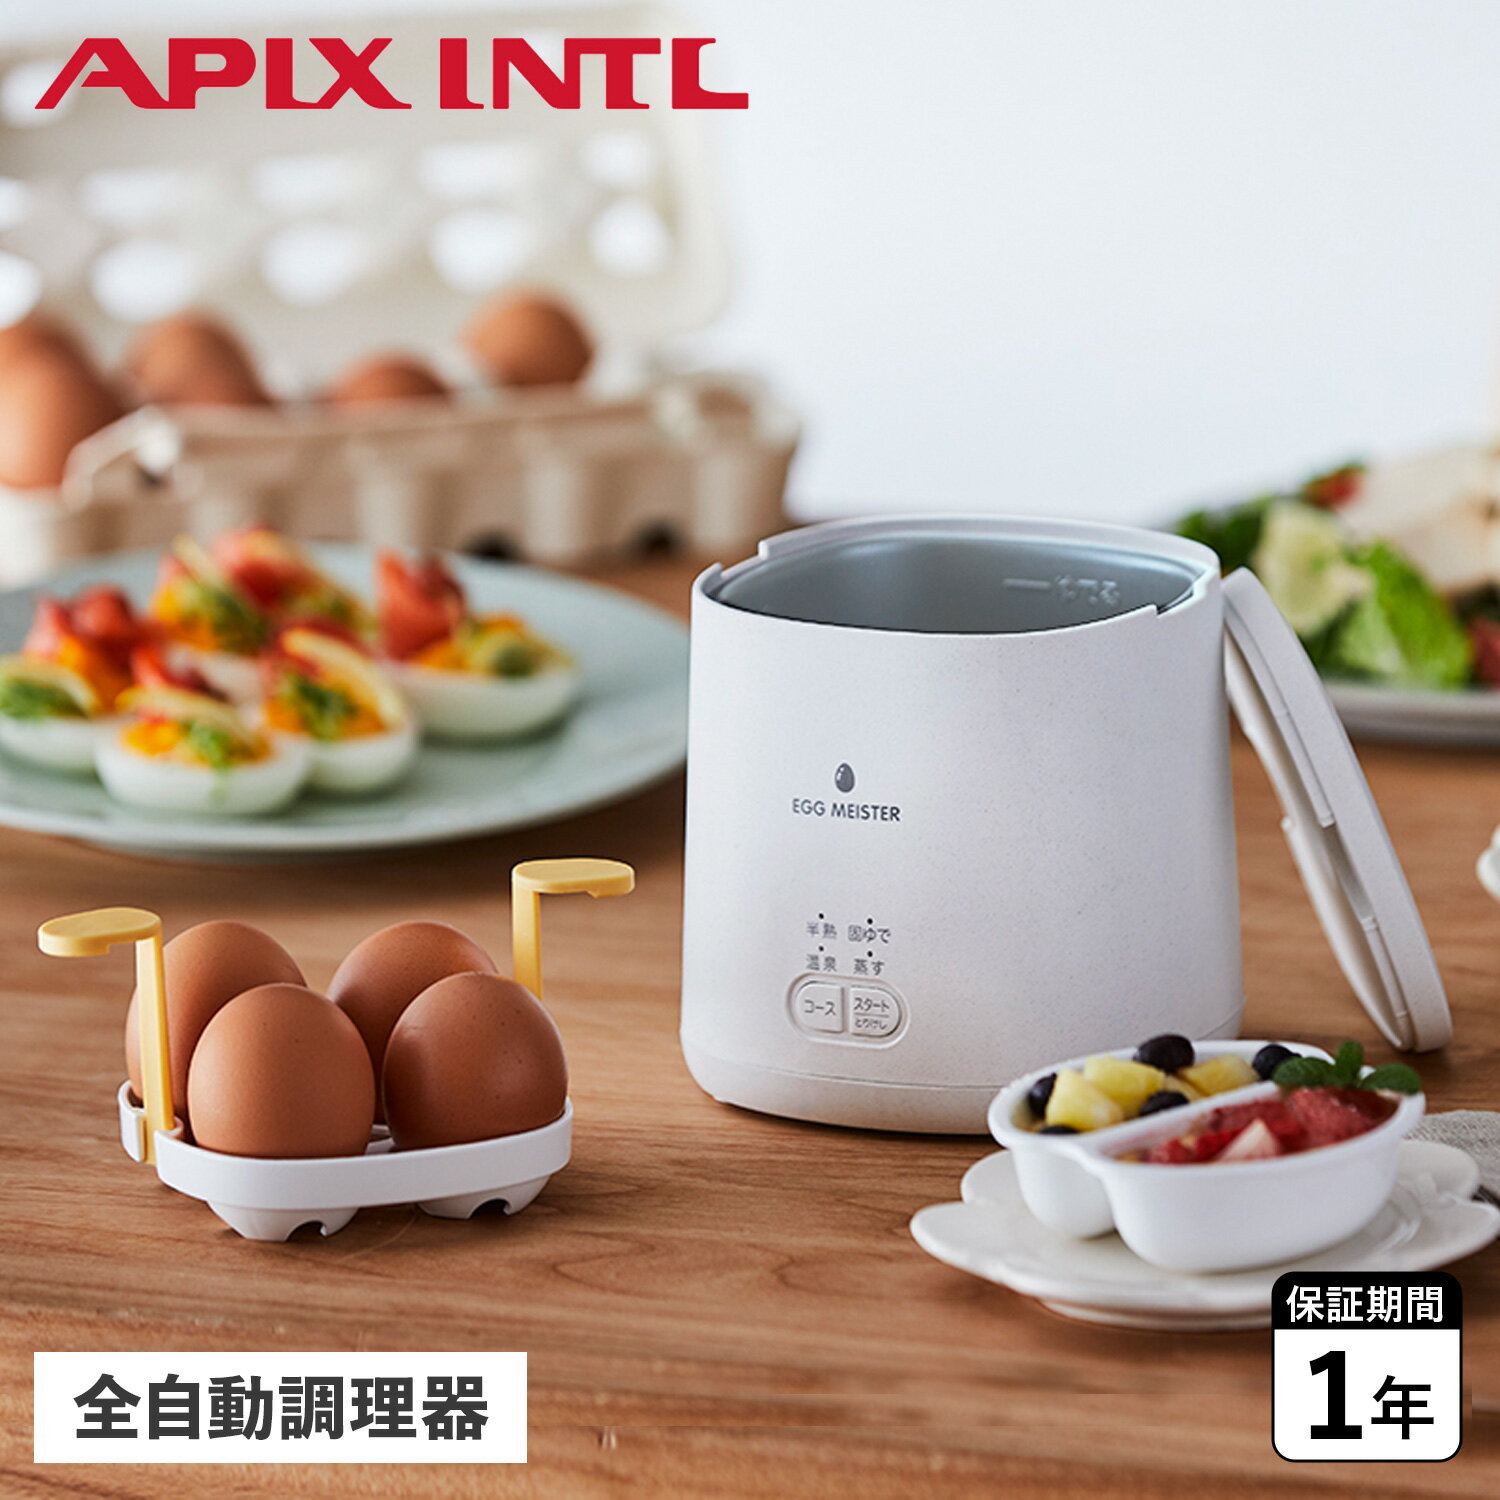 ゆで卵メーカー APIX INTL アピックスインターナショナル ゆで卵メーカー ゆでたまご器 エッグマイスター 蒸し器 エッグスチーマー 電気式 EGG MEISTER AEM-422